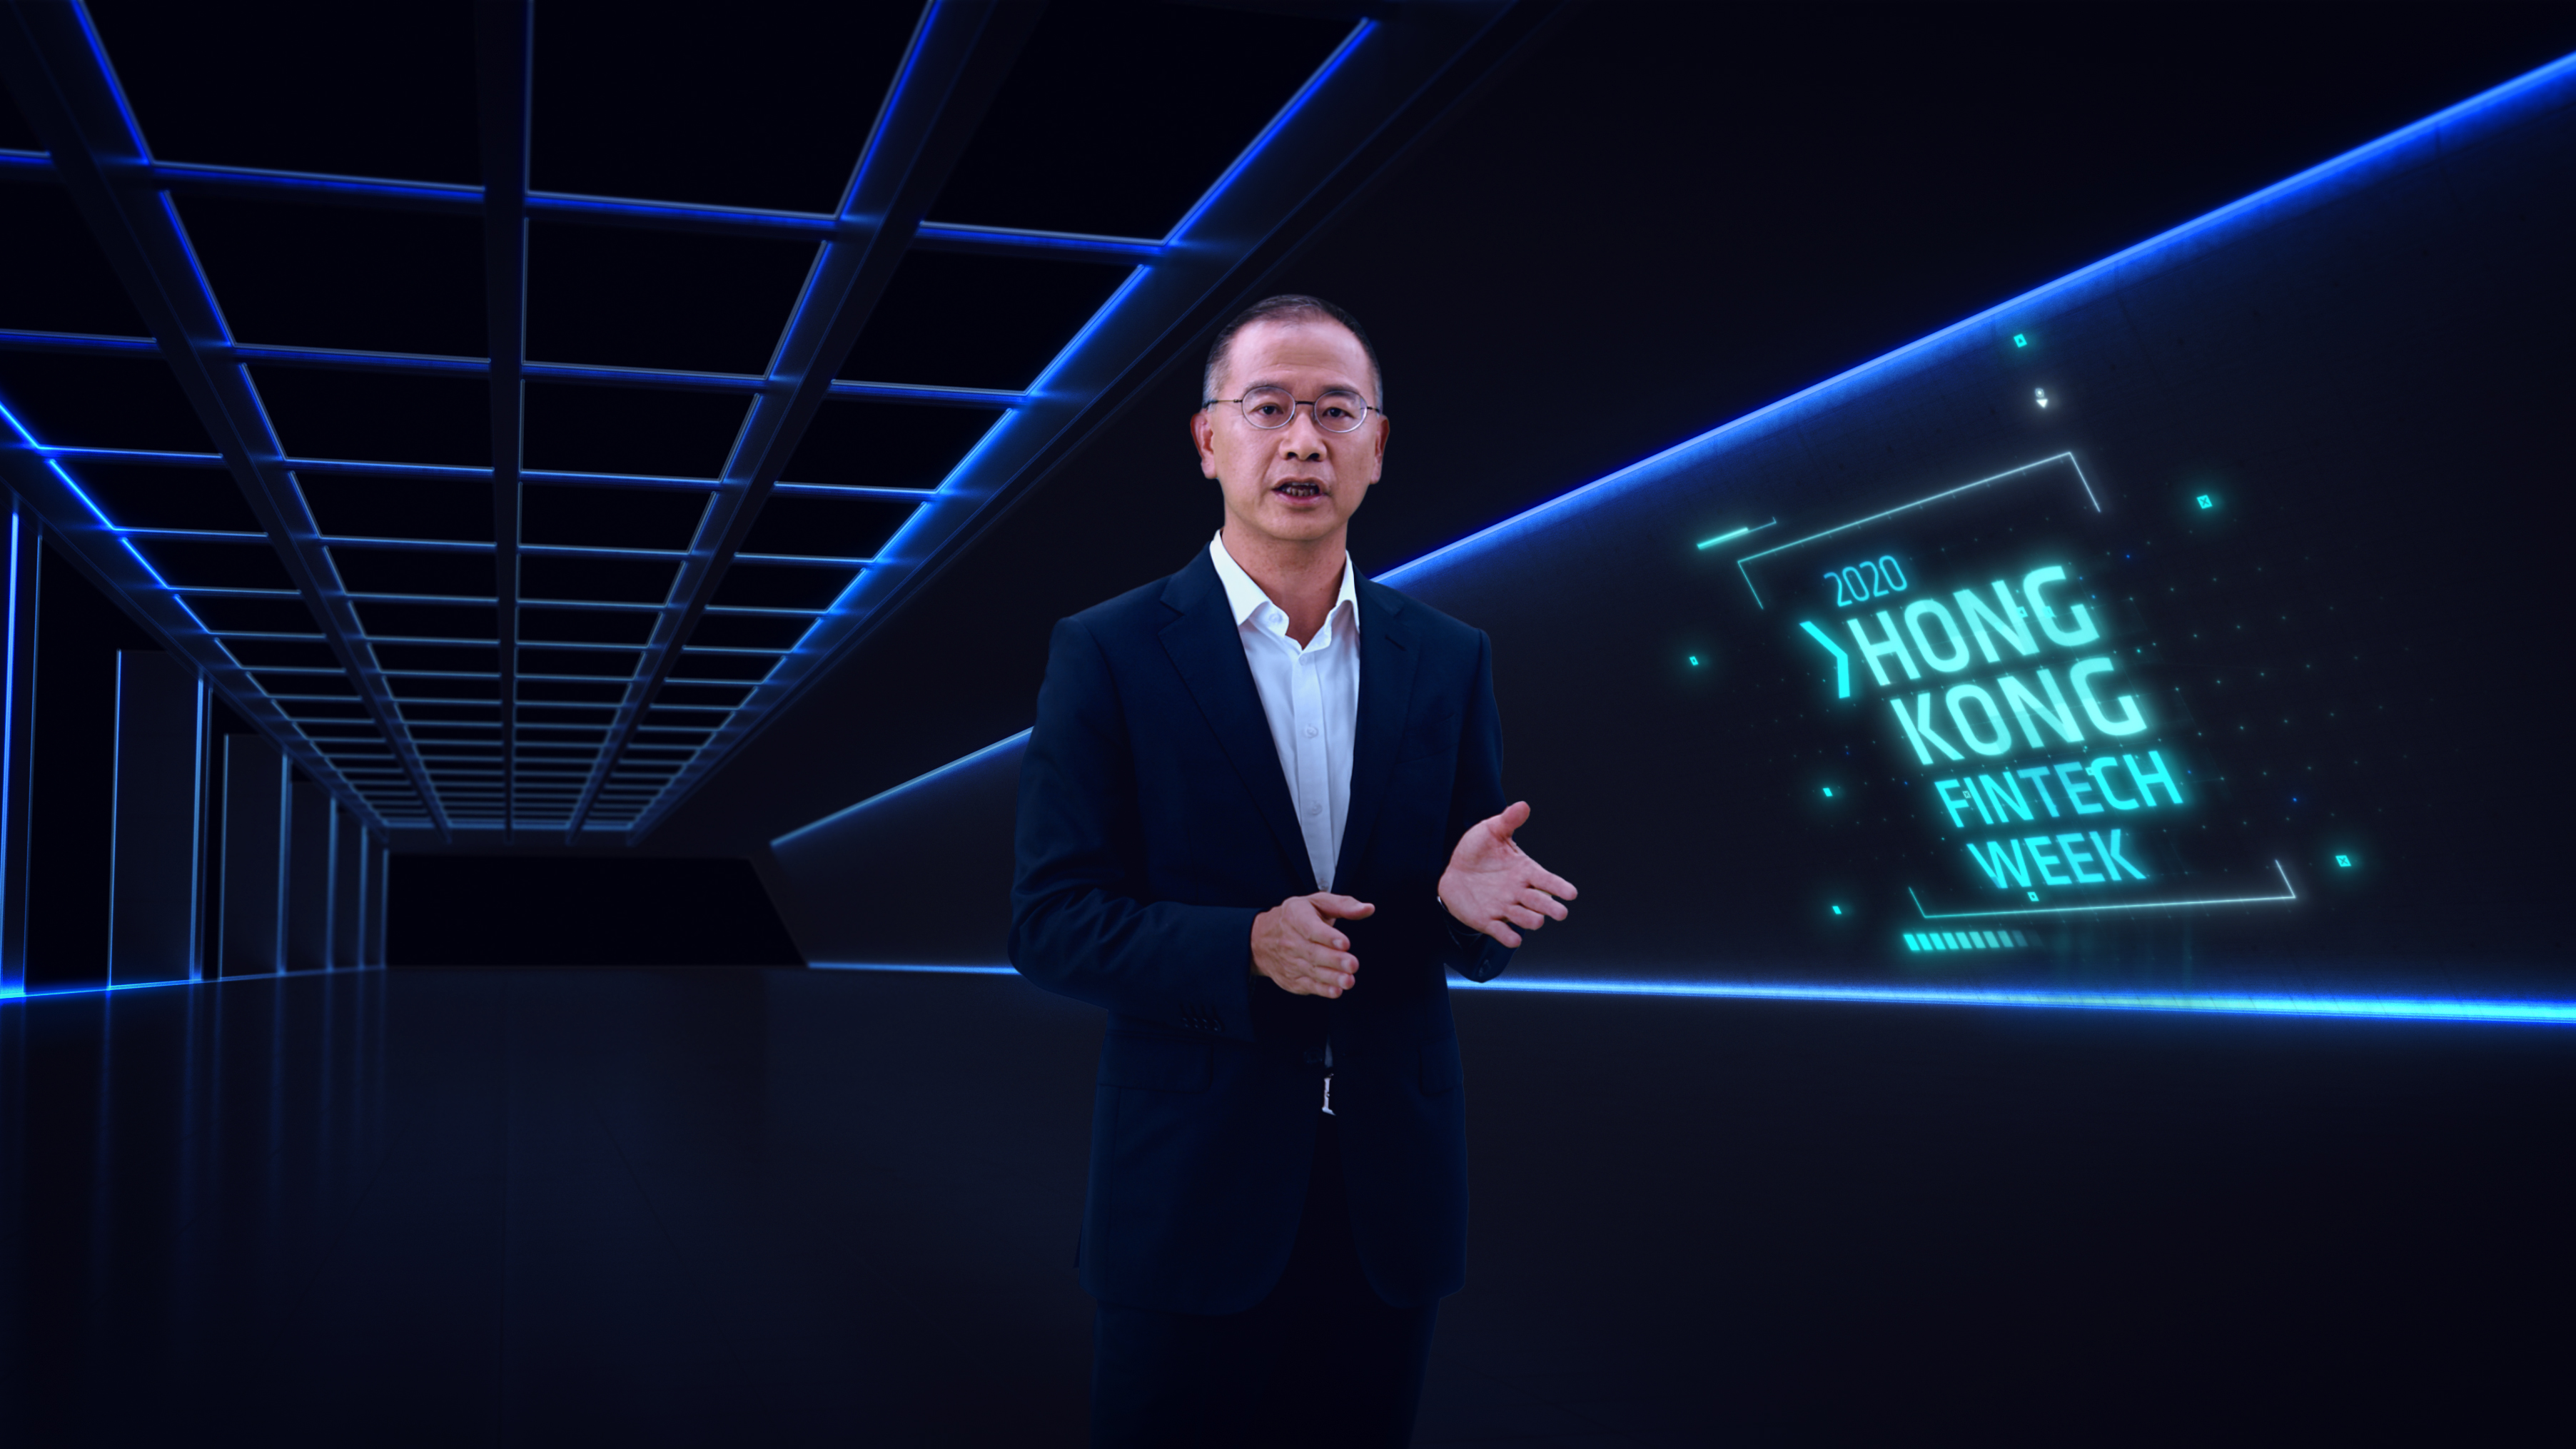 金管局總裁余偉文先生於線上進行的「香港金融科技周2020」發表開幕主題演講，談及香港未來金融科技策略。請按此觀看相關影片。